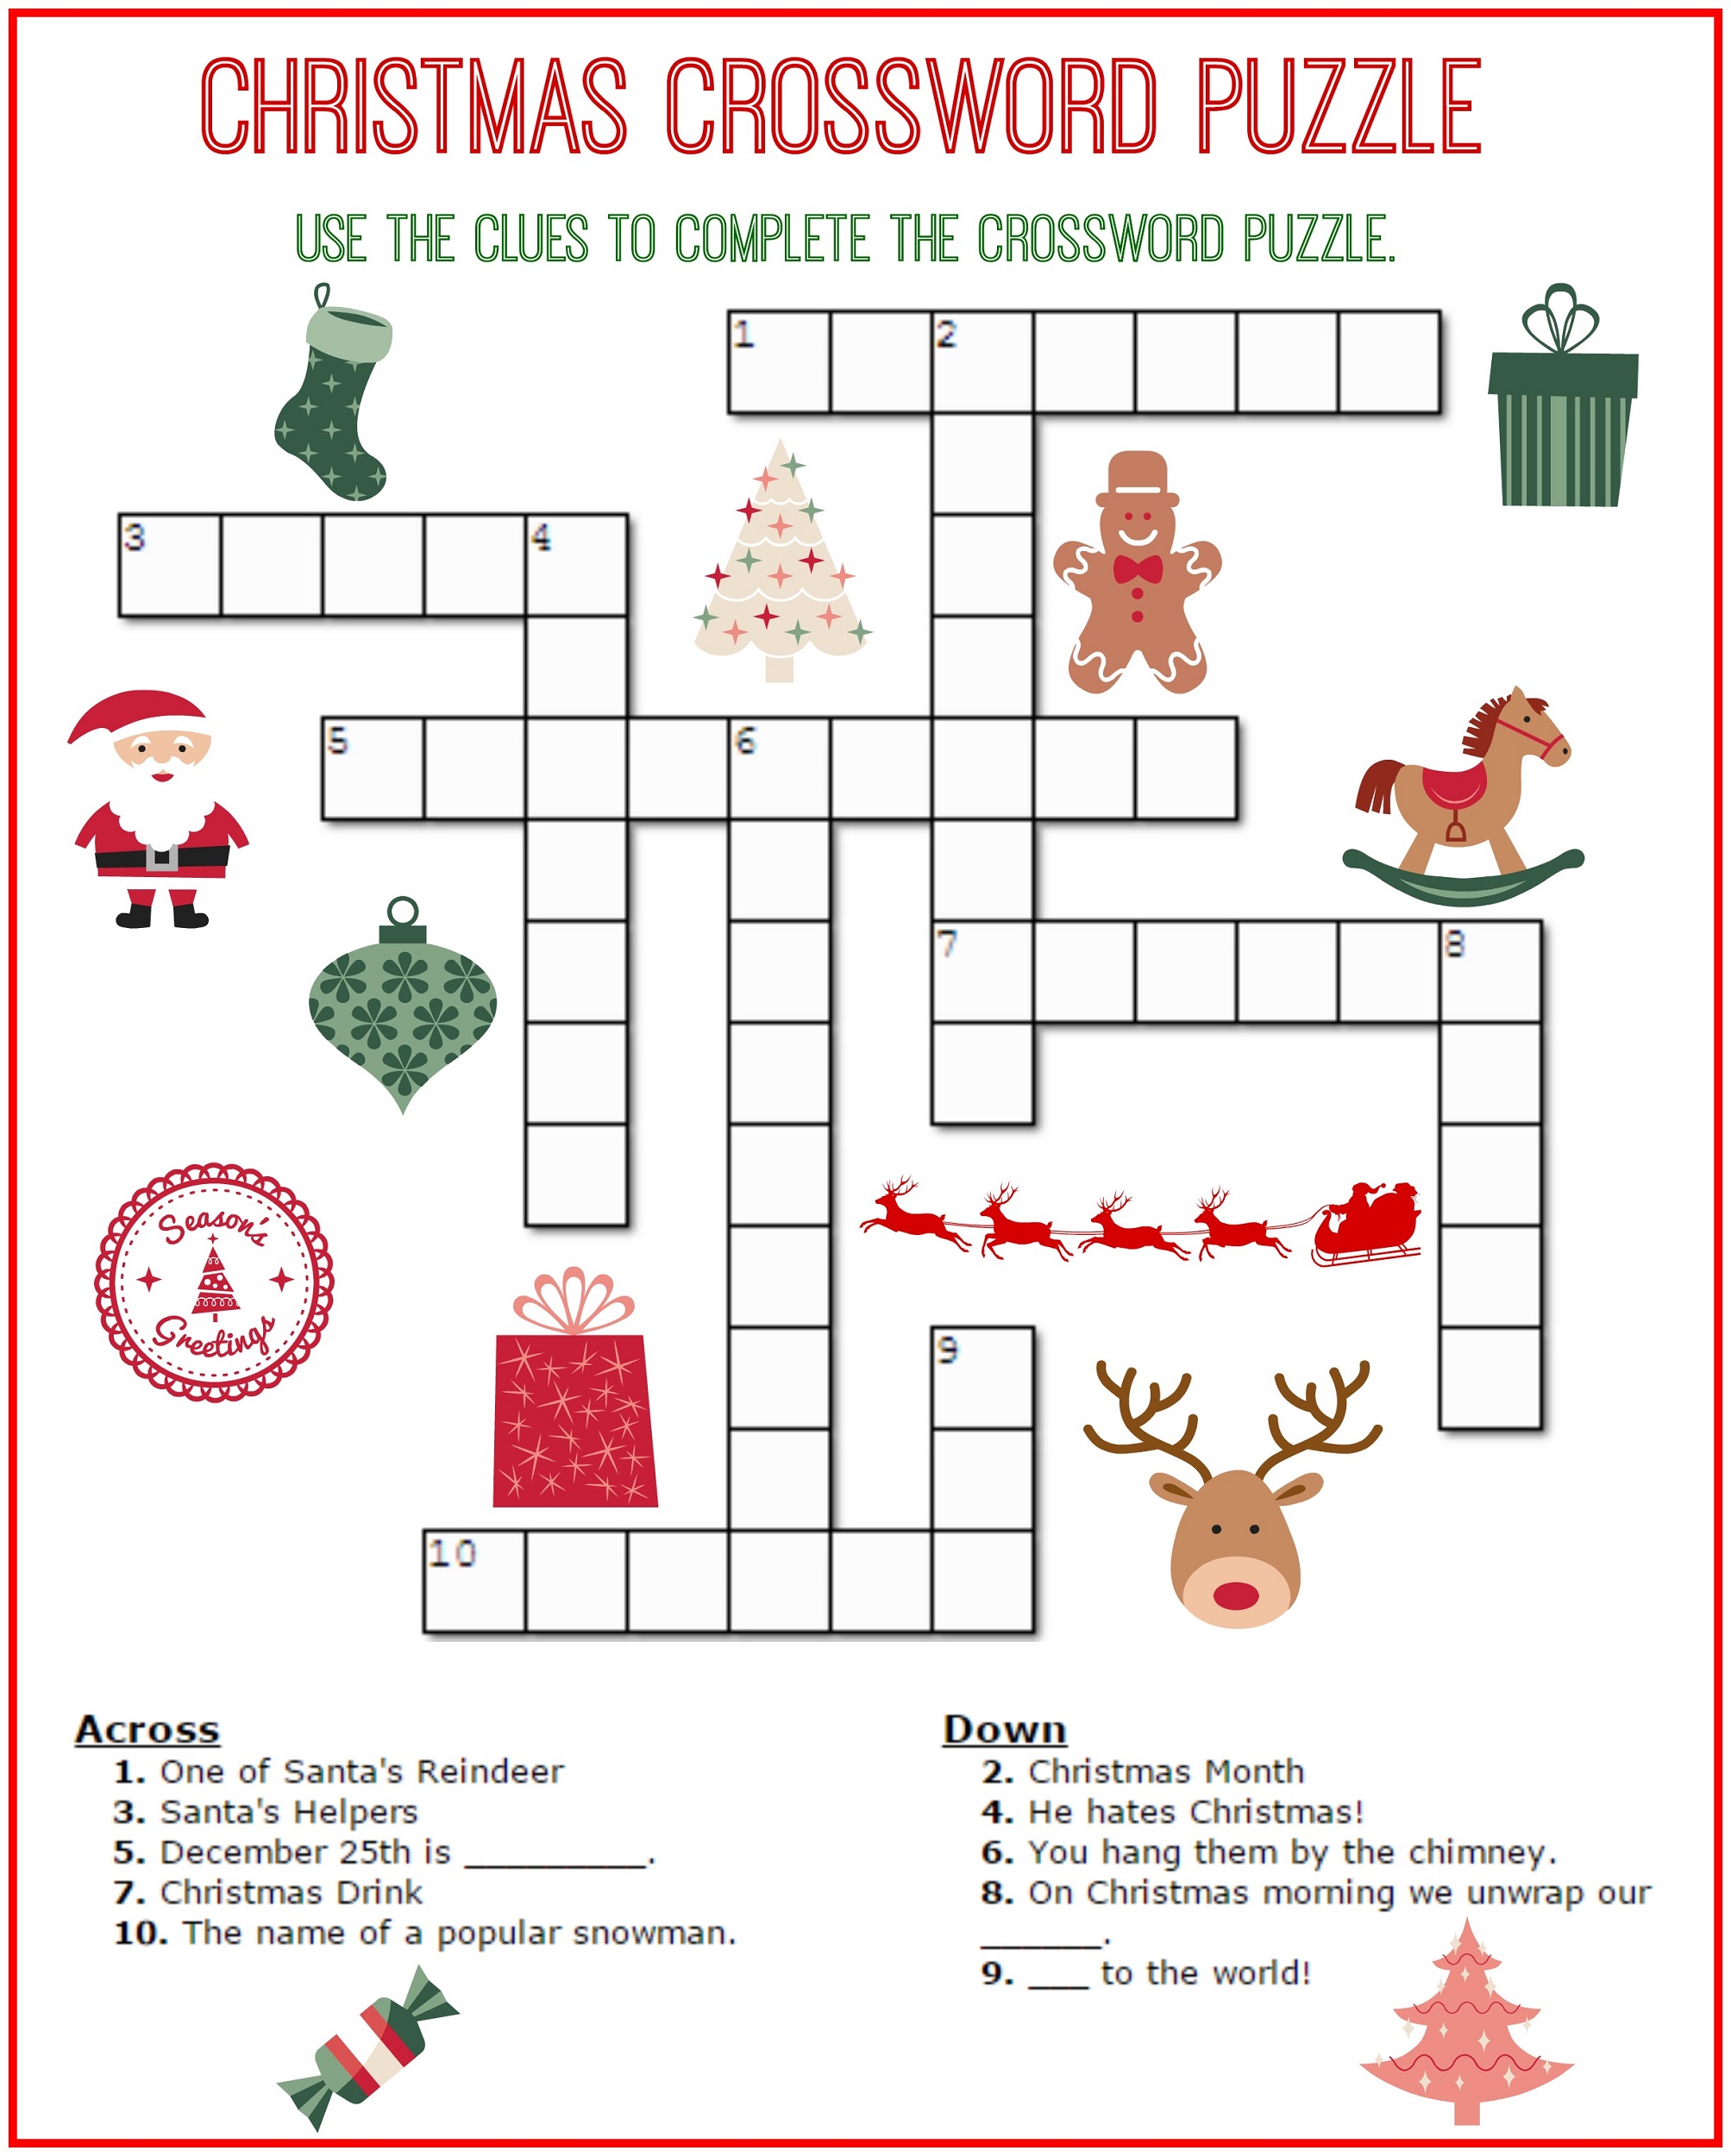 video games crossword wordmint - easy crosswords puzzles for kids ...